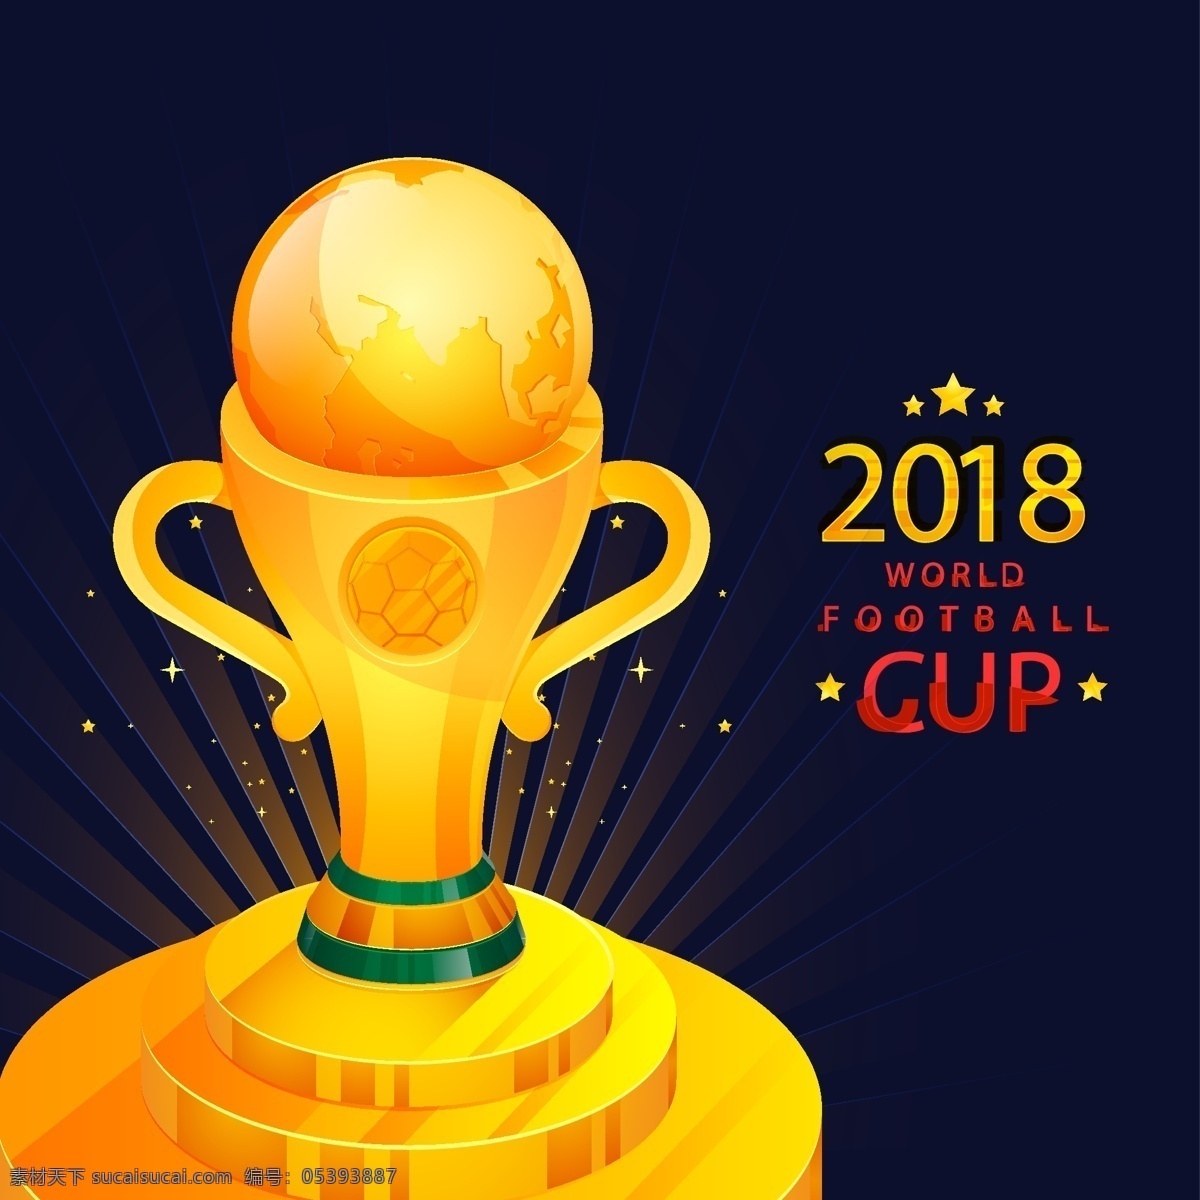 矢量 金色 奖杯 足球赛 世界杯 矢量素材 足球 2018 俄罗斯 欧洲杯 卡通 比赛 体育 竞赛 扁平